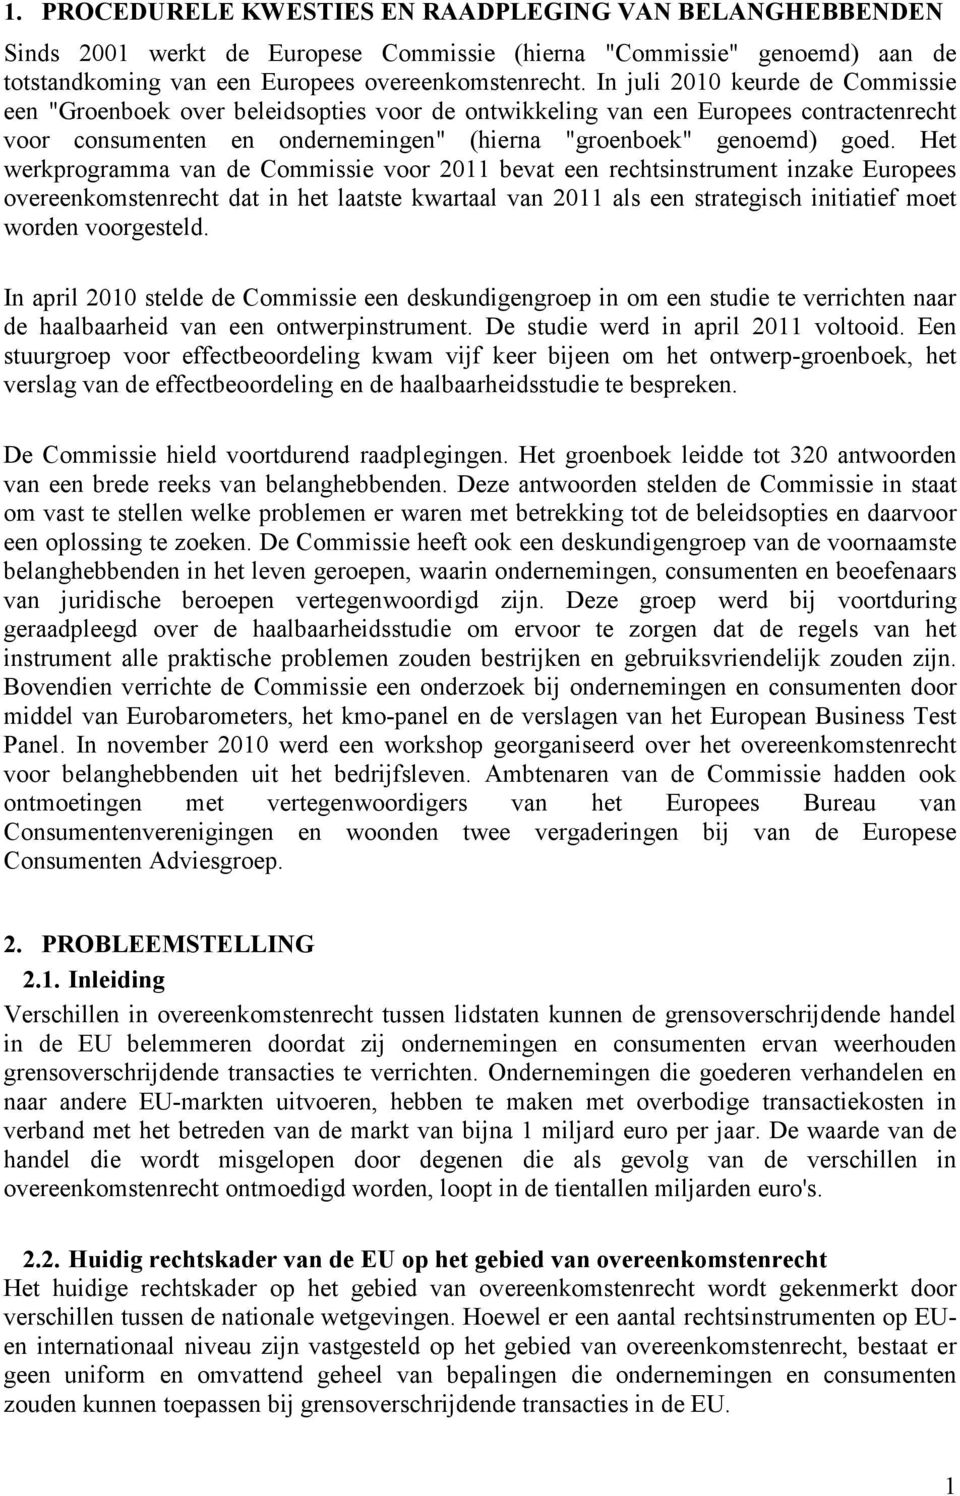 Het werkprogramma van de Commissie voor 2011 bevat een rechtsinstrument inzake Europees overeenkomstenrecht dat in het laatste kwartaal van 2011 als een strategisch initiatief moet worden voorgesteld.